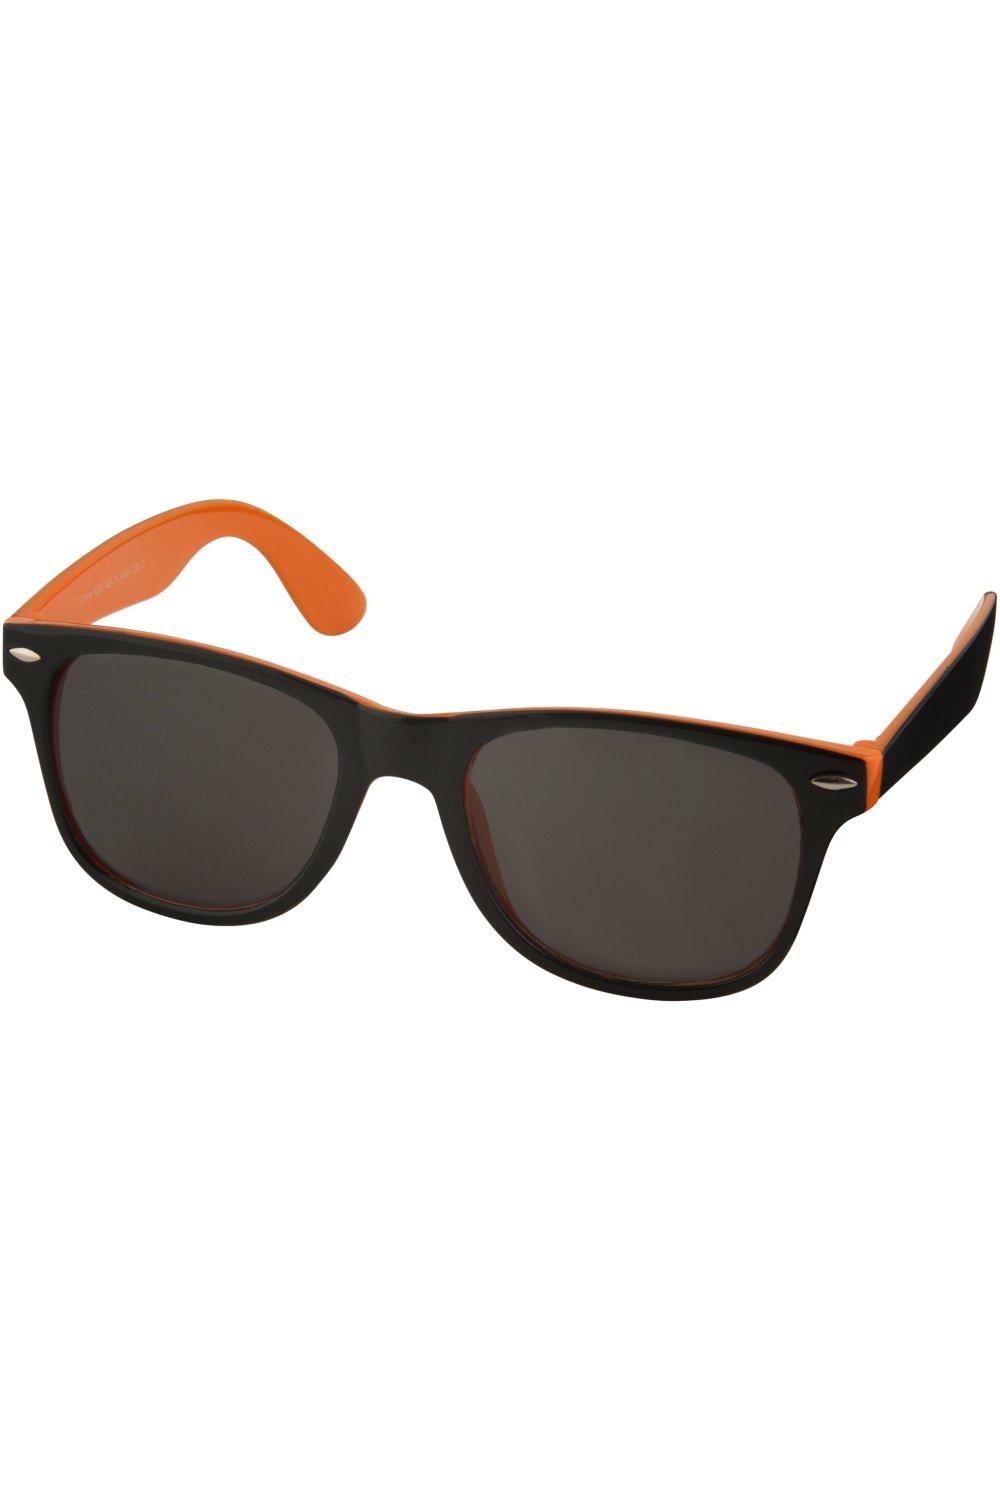 Солнцезащитные очки Sun Ray - черные с яркими акцентами Bullet, оранжевый фотографии